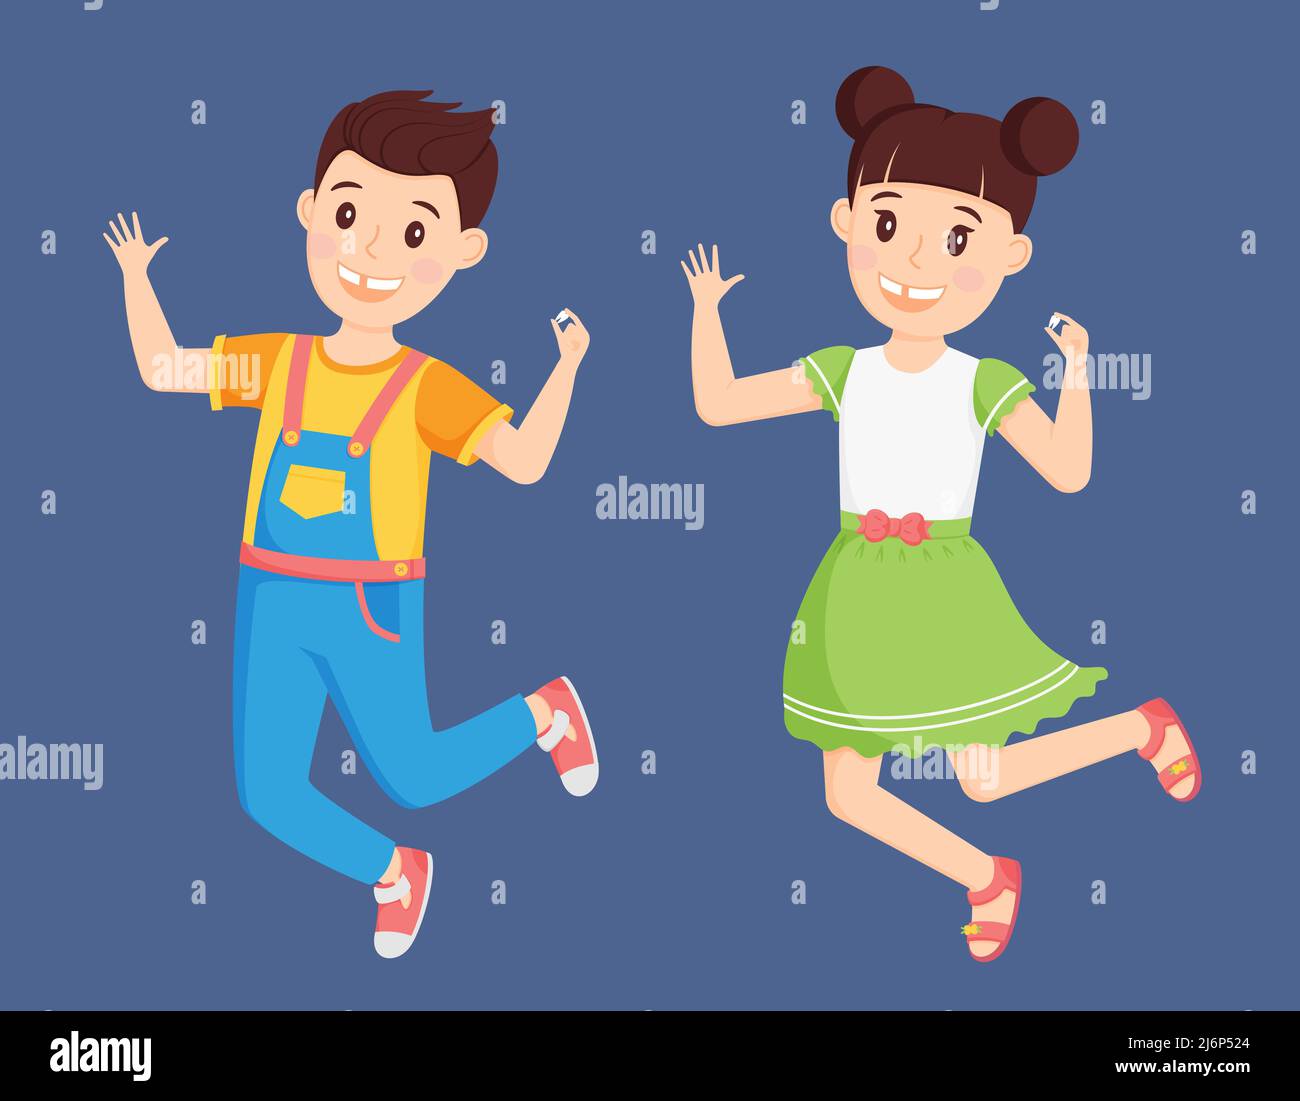 Kinder ein Junge in einem Jumpsuit und ein Mädchen in einem Kleid springen mit einem gefallenen Zahn in der Hand. Nette Comic-Figuren sind glücklich und lächeln. Verlust des Stock Vektor